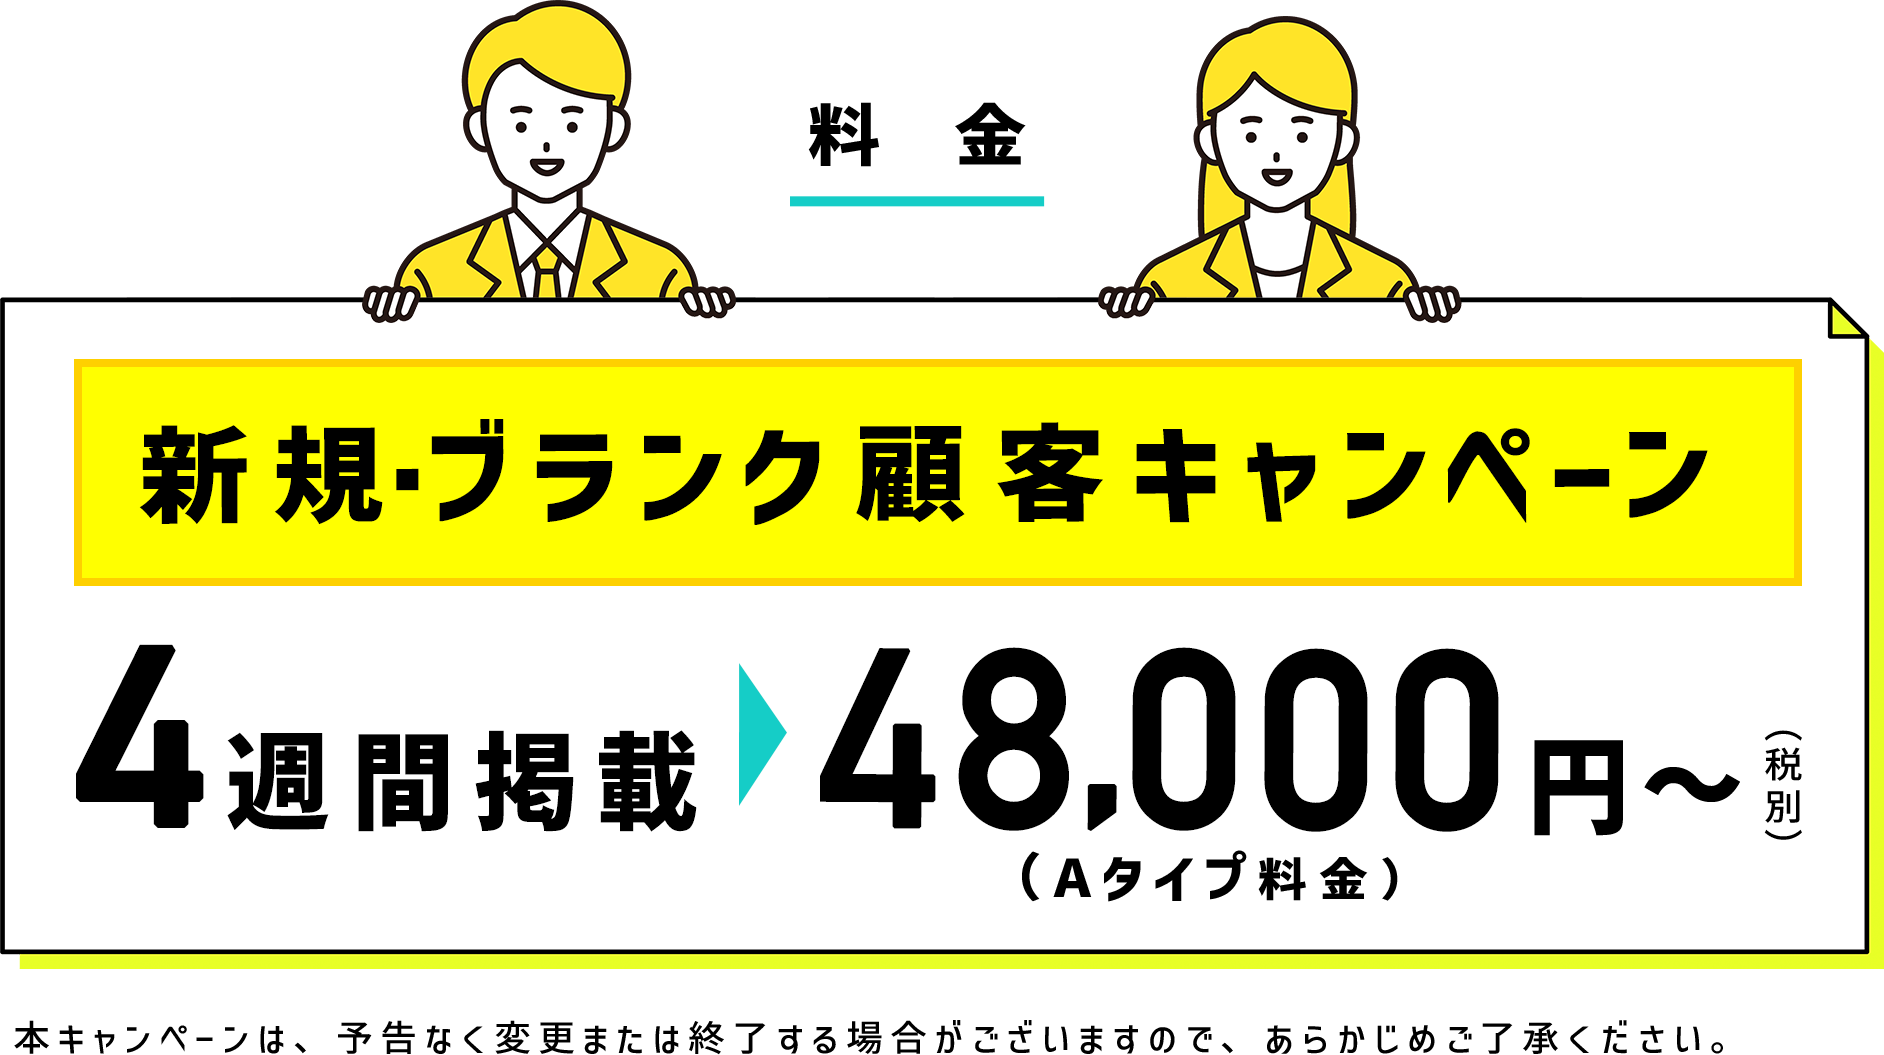 料金 新規・ブランク顧客キャンペーン４週間掲載→48,000円〜(税別)(Aタイプ料金)